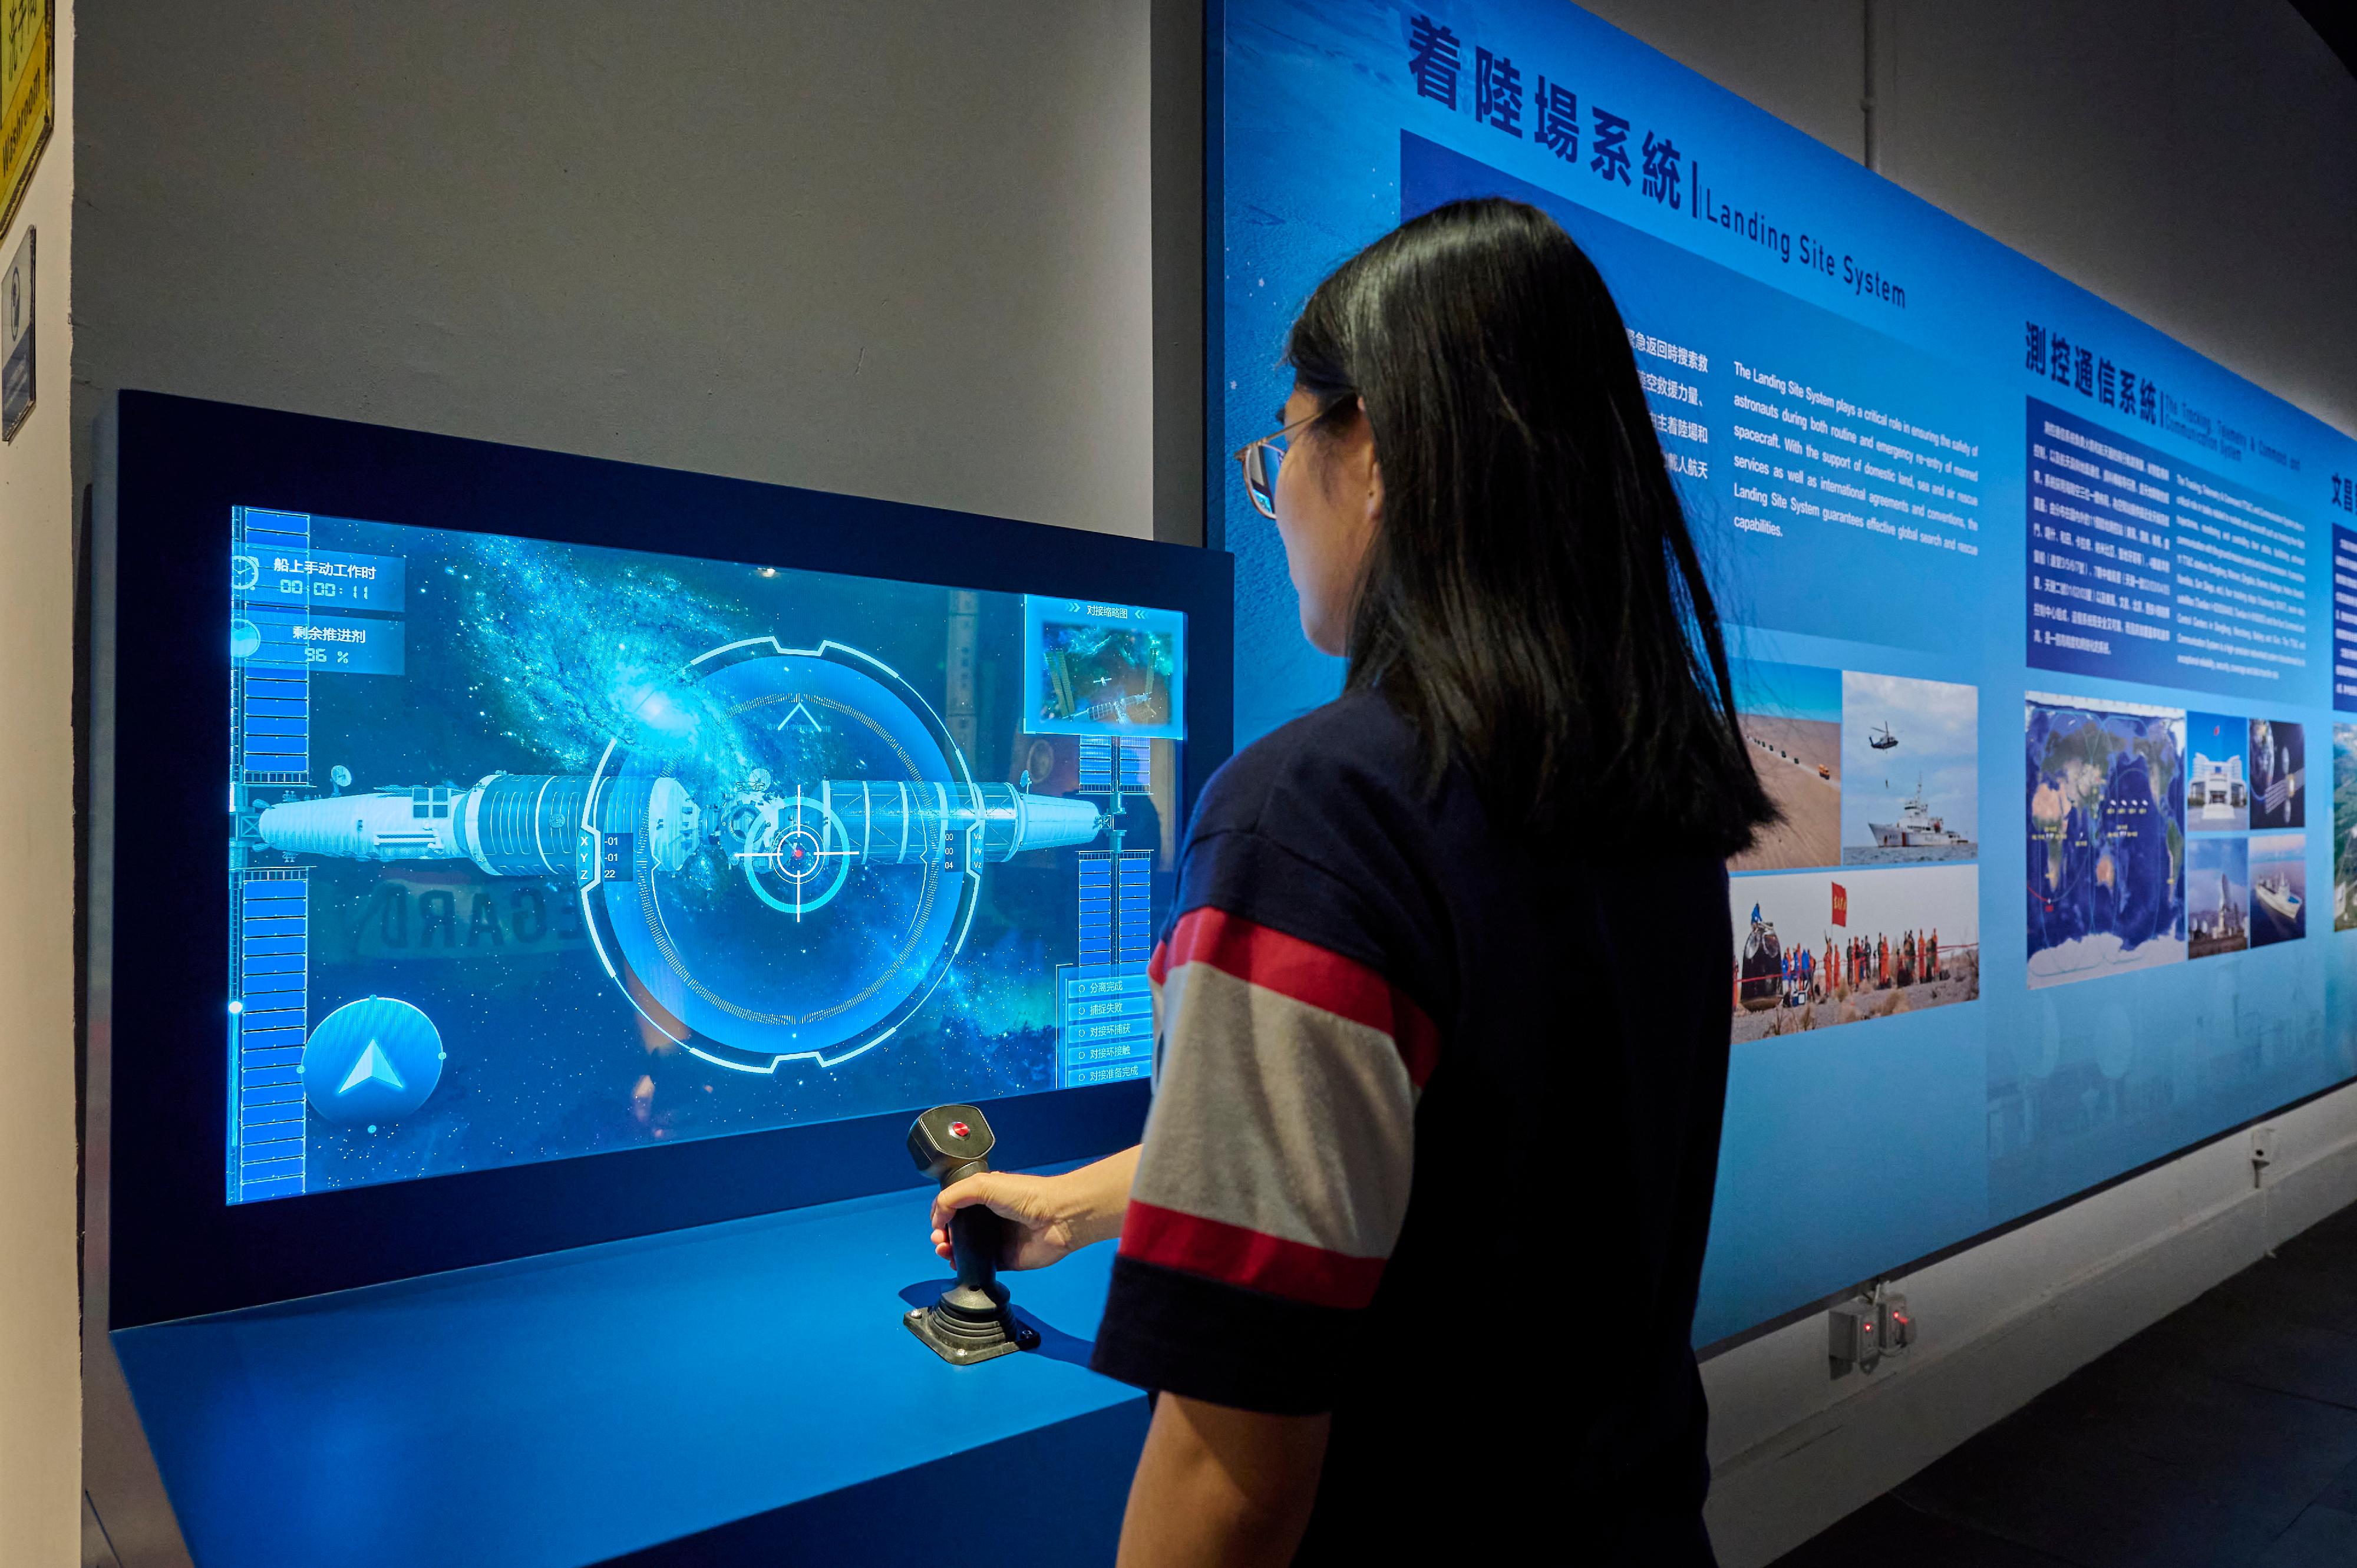 中国载人航天工程展明日（十二月一日）起至明年二月十八日在香港科学馆和香港历史博物馆举行。图示互动展品「空间站交会对接」，观众可模拟航天员控制神舟载人飞船与空间站进行交会对接。
